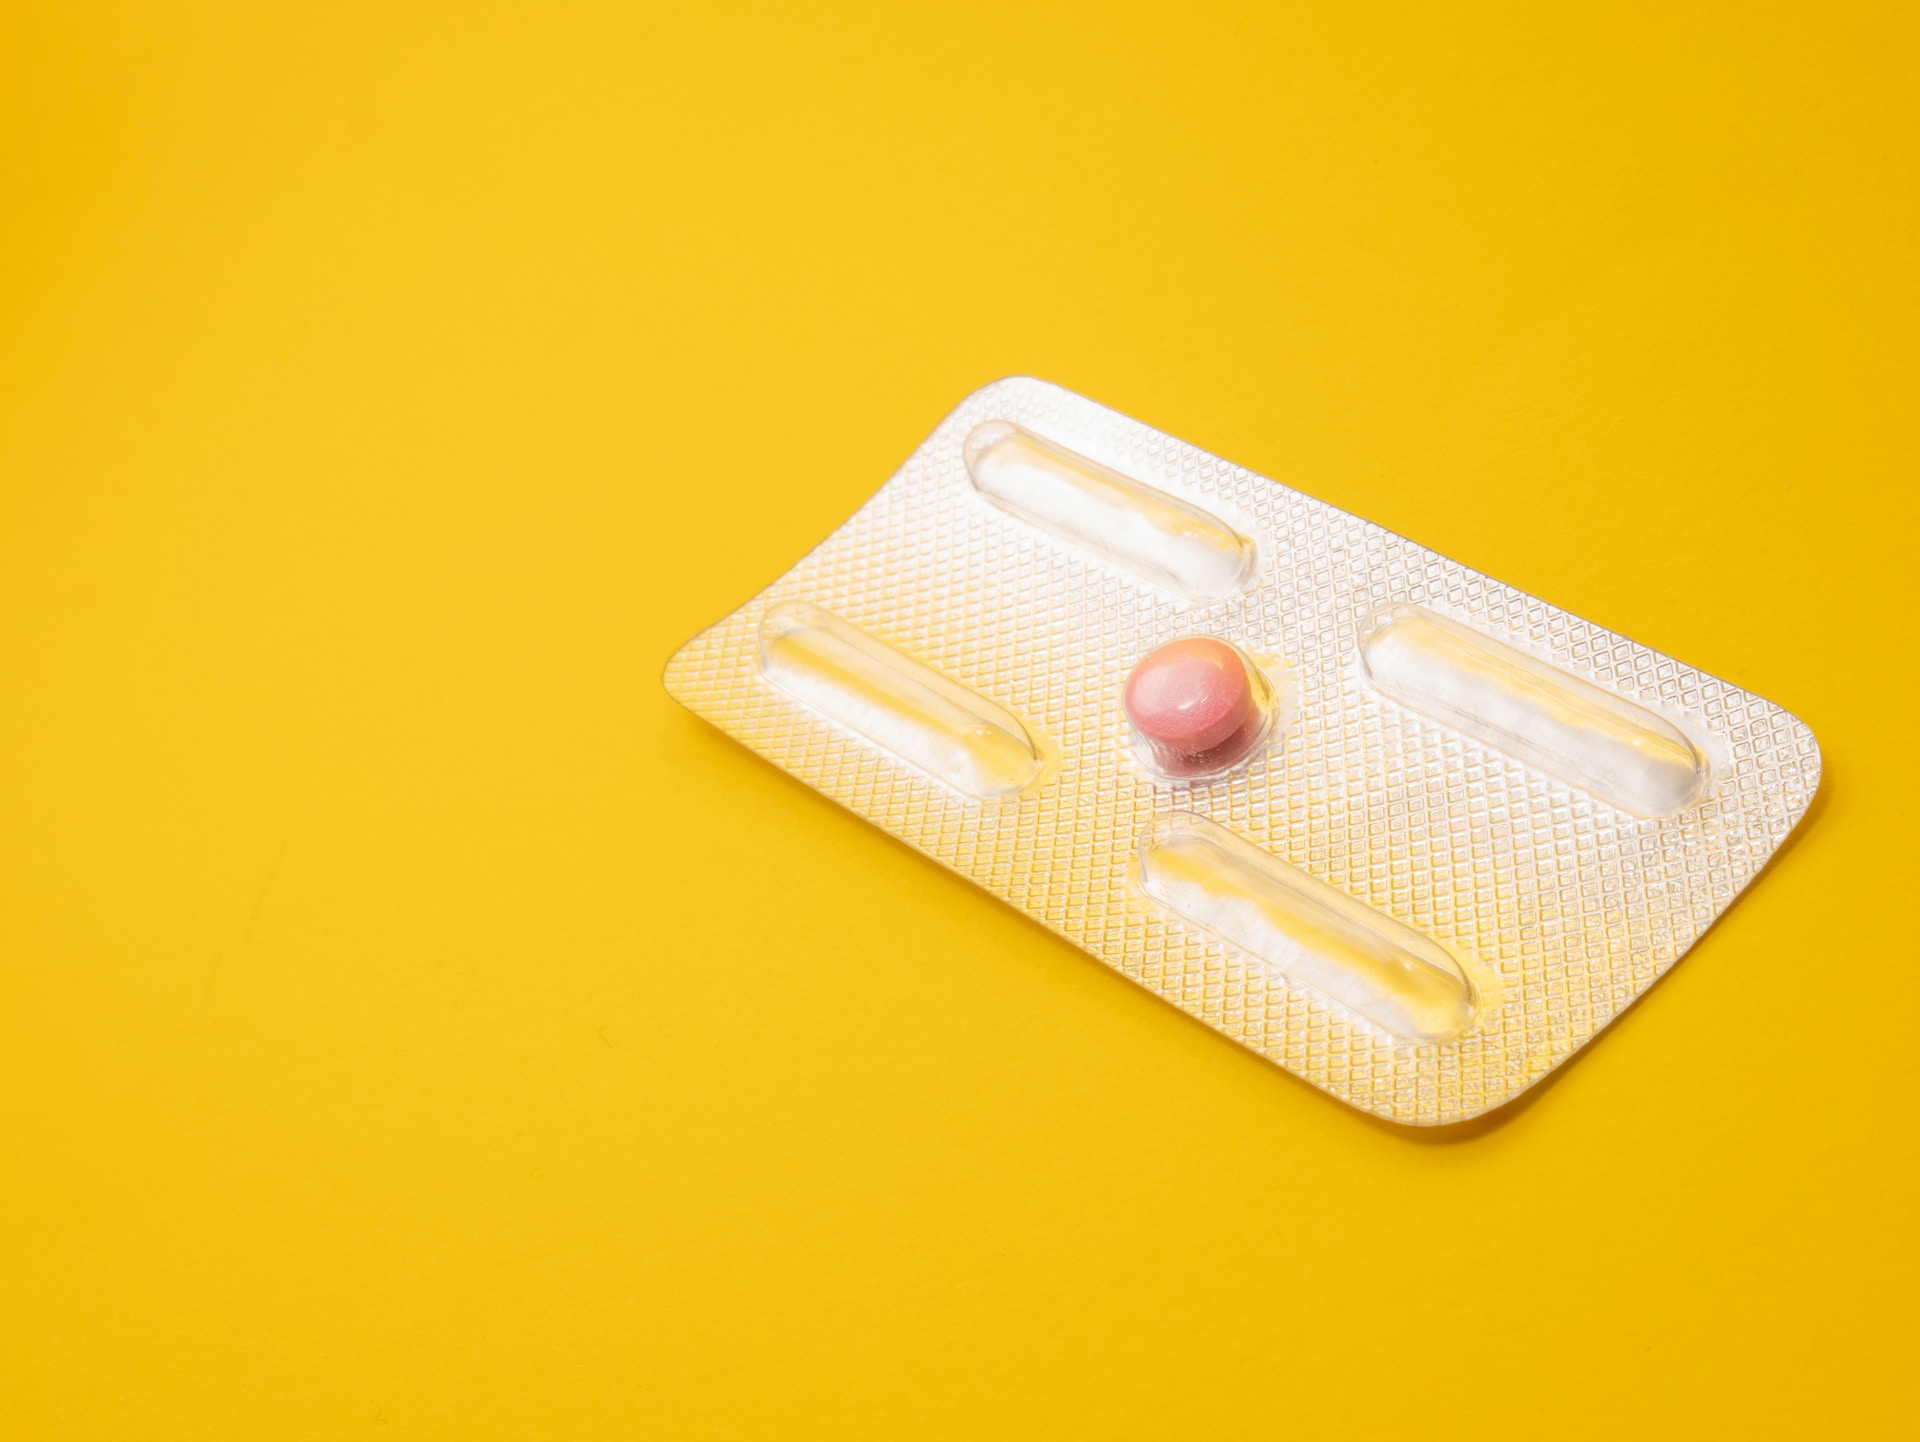 L'arrêt de pilule contraceptive